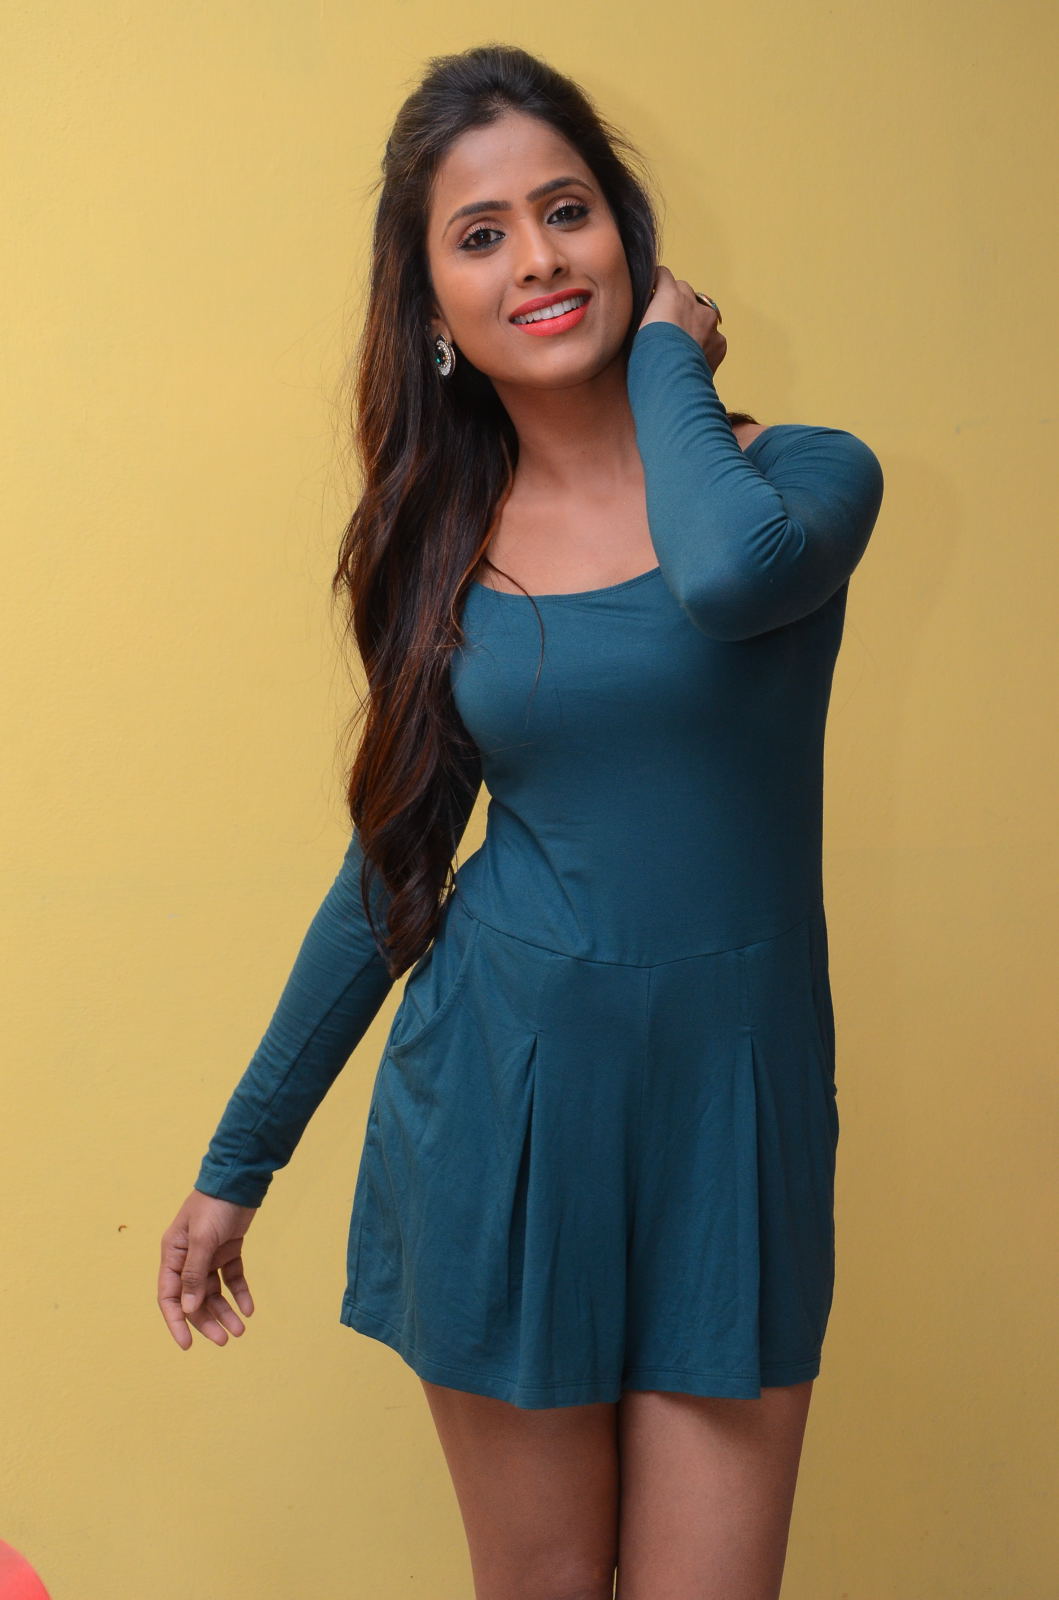 prashanthi Super Hot Prashanthi In Sexy Outfit | Indian Cinema | Models | Actresses Prashanthi Hot Photo Stills 128